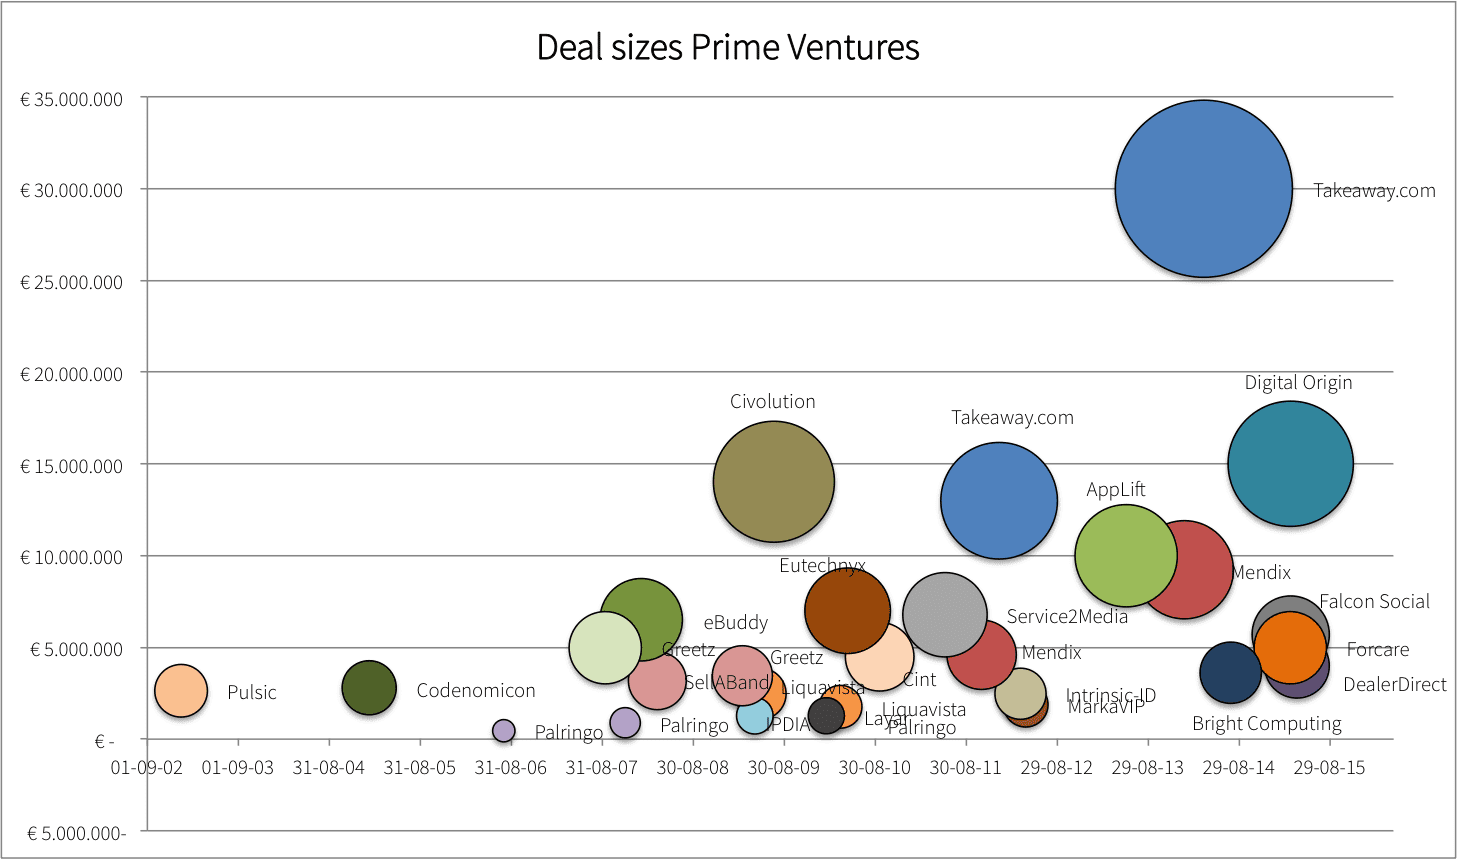 De investeringsbedragen van Prime Ventures per deal.